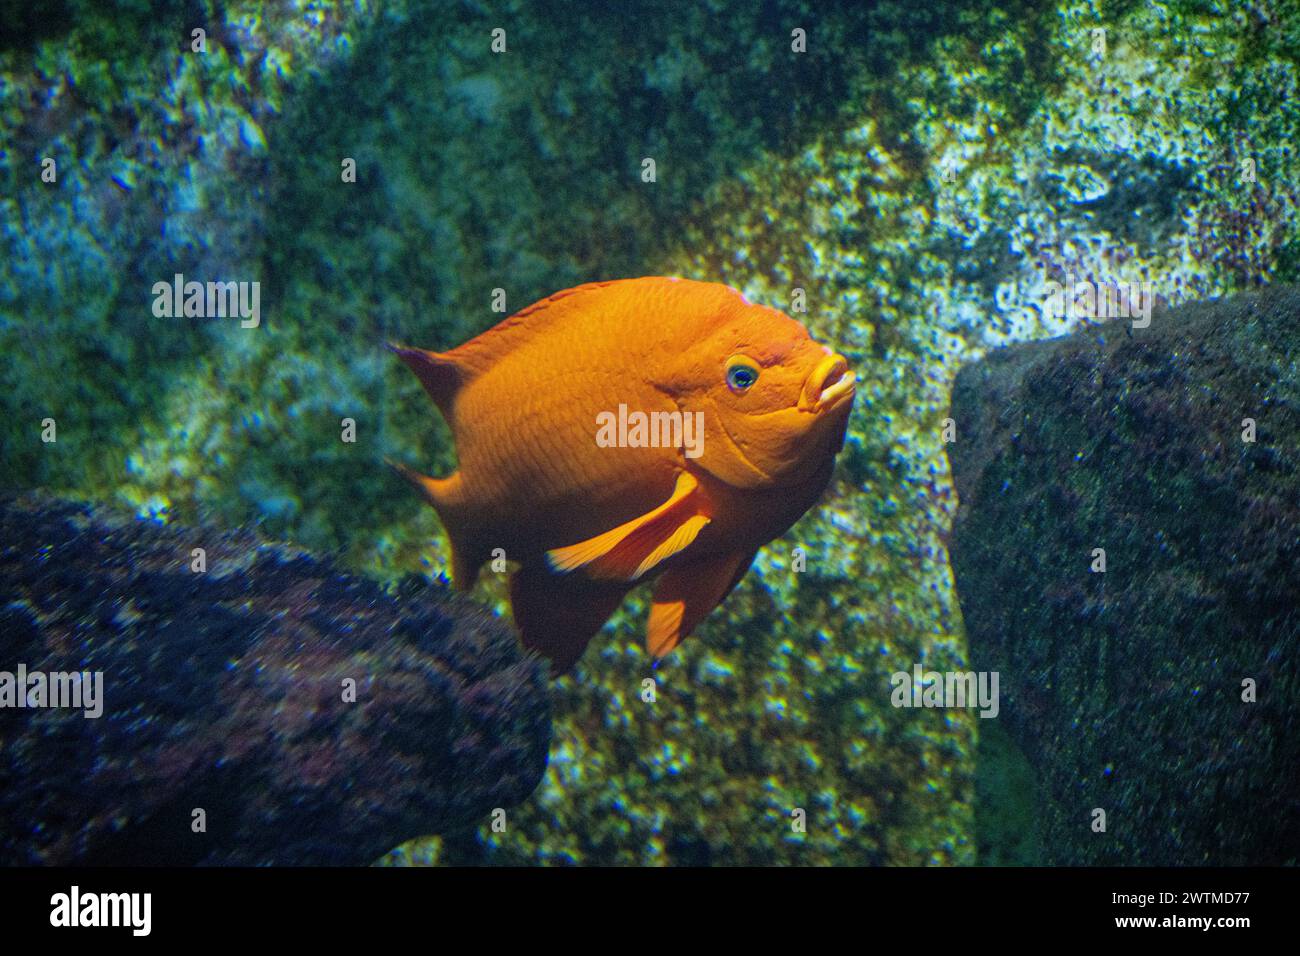 La damigella Garibaldi (Hypsypops rubicundus) è una specie di pesce arancione brillante della famiglia delle damigelle. Foto Stock